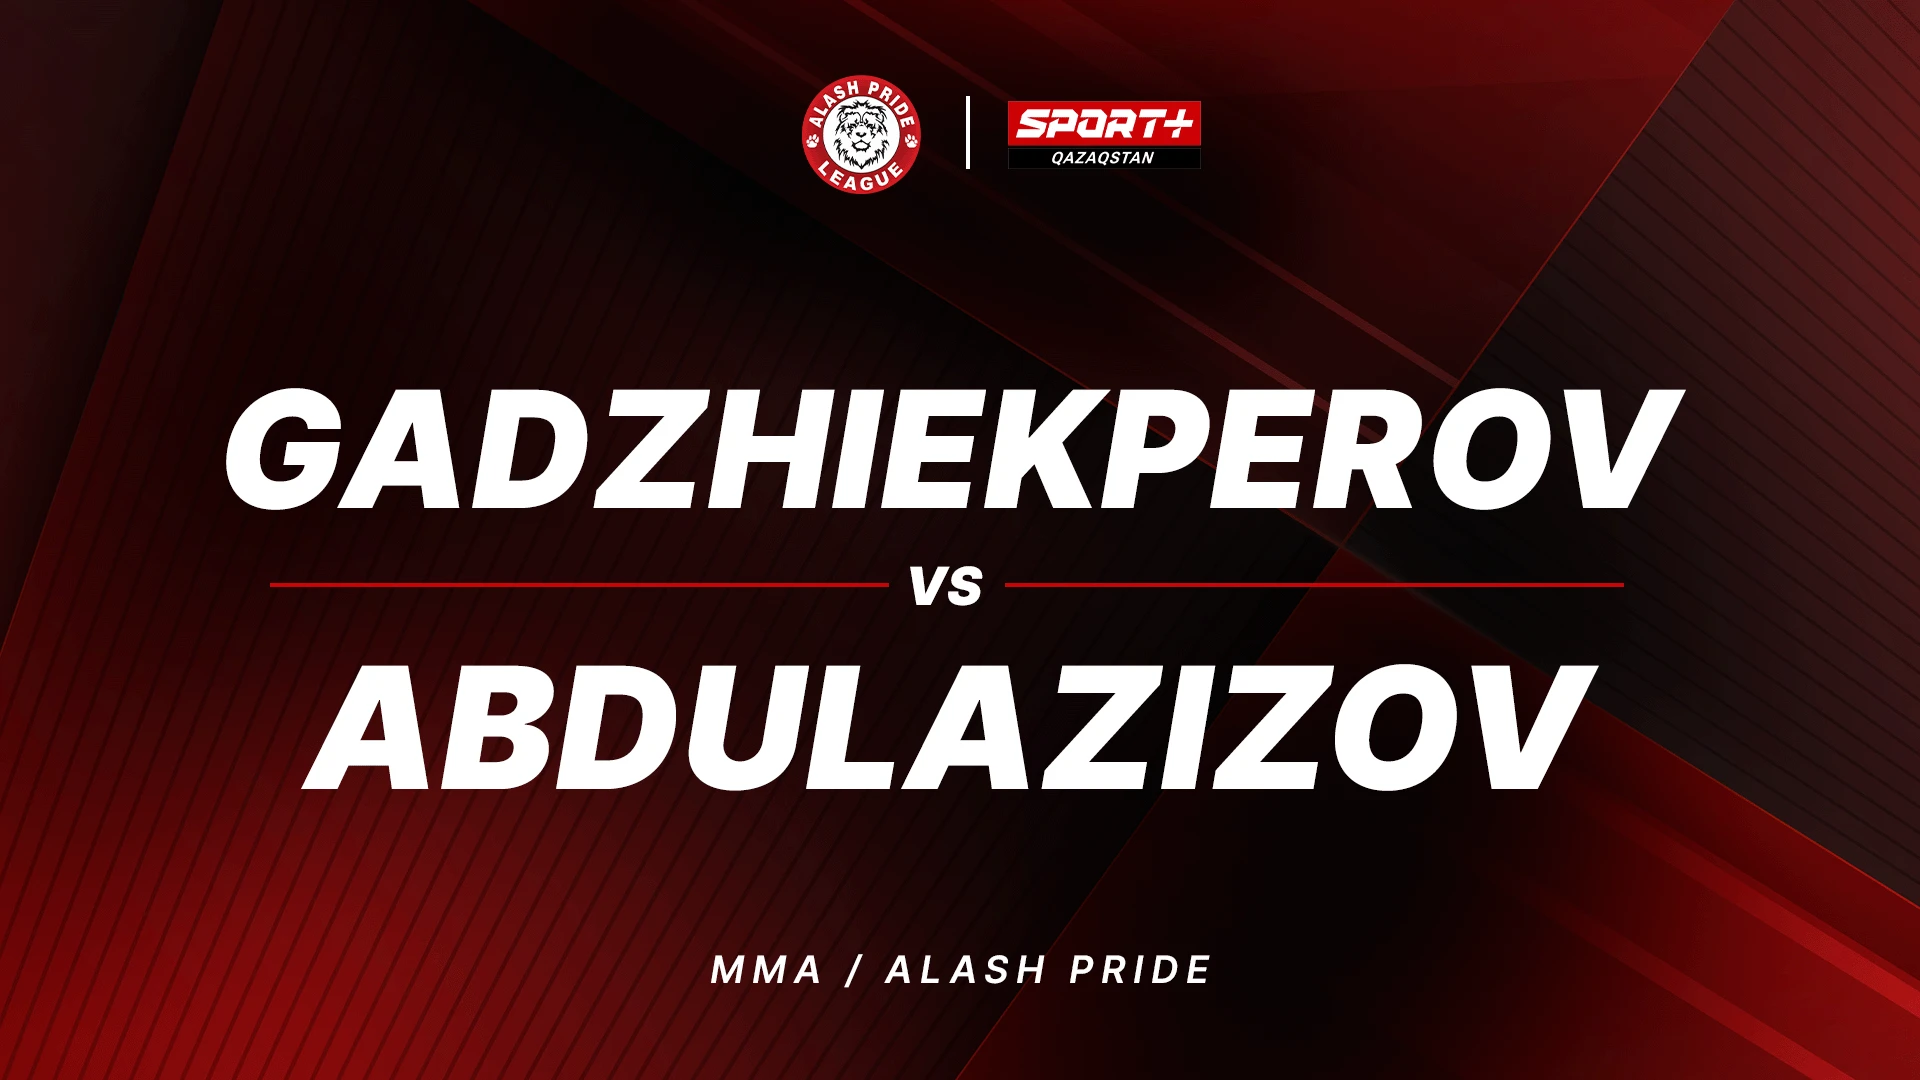 ALASH PRIDE FC 99: GADZHIEKPEROV vs ABDULAZIZOV